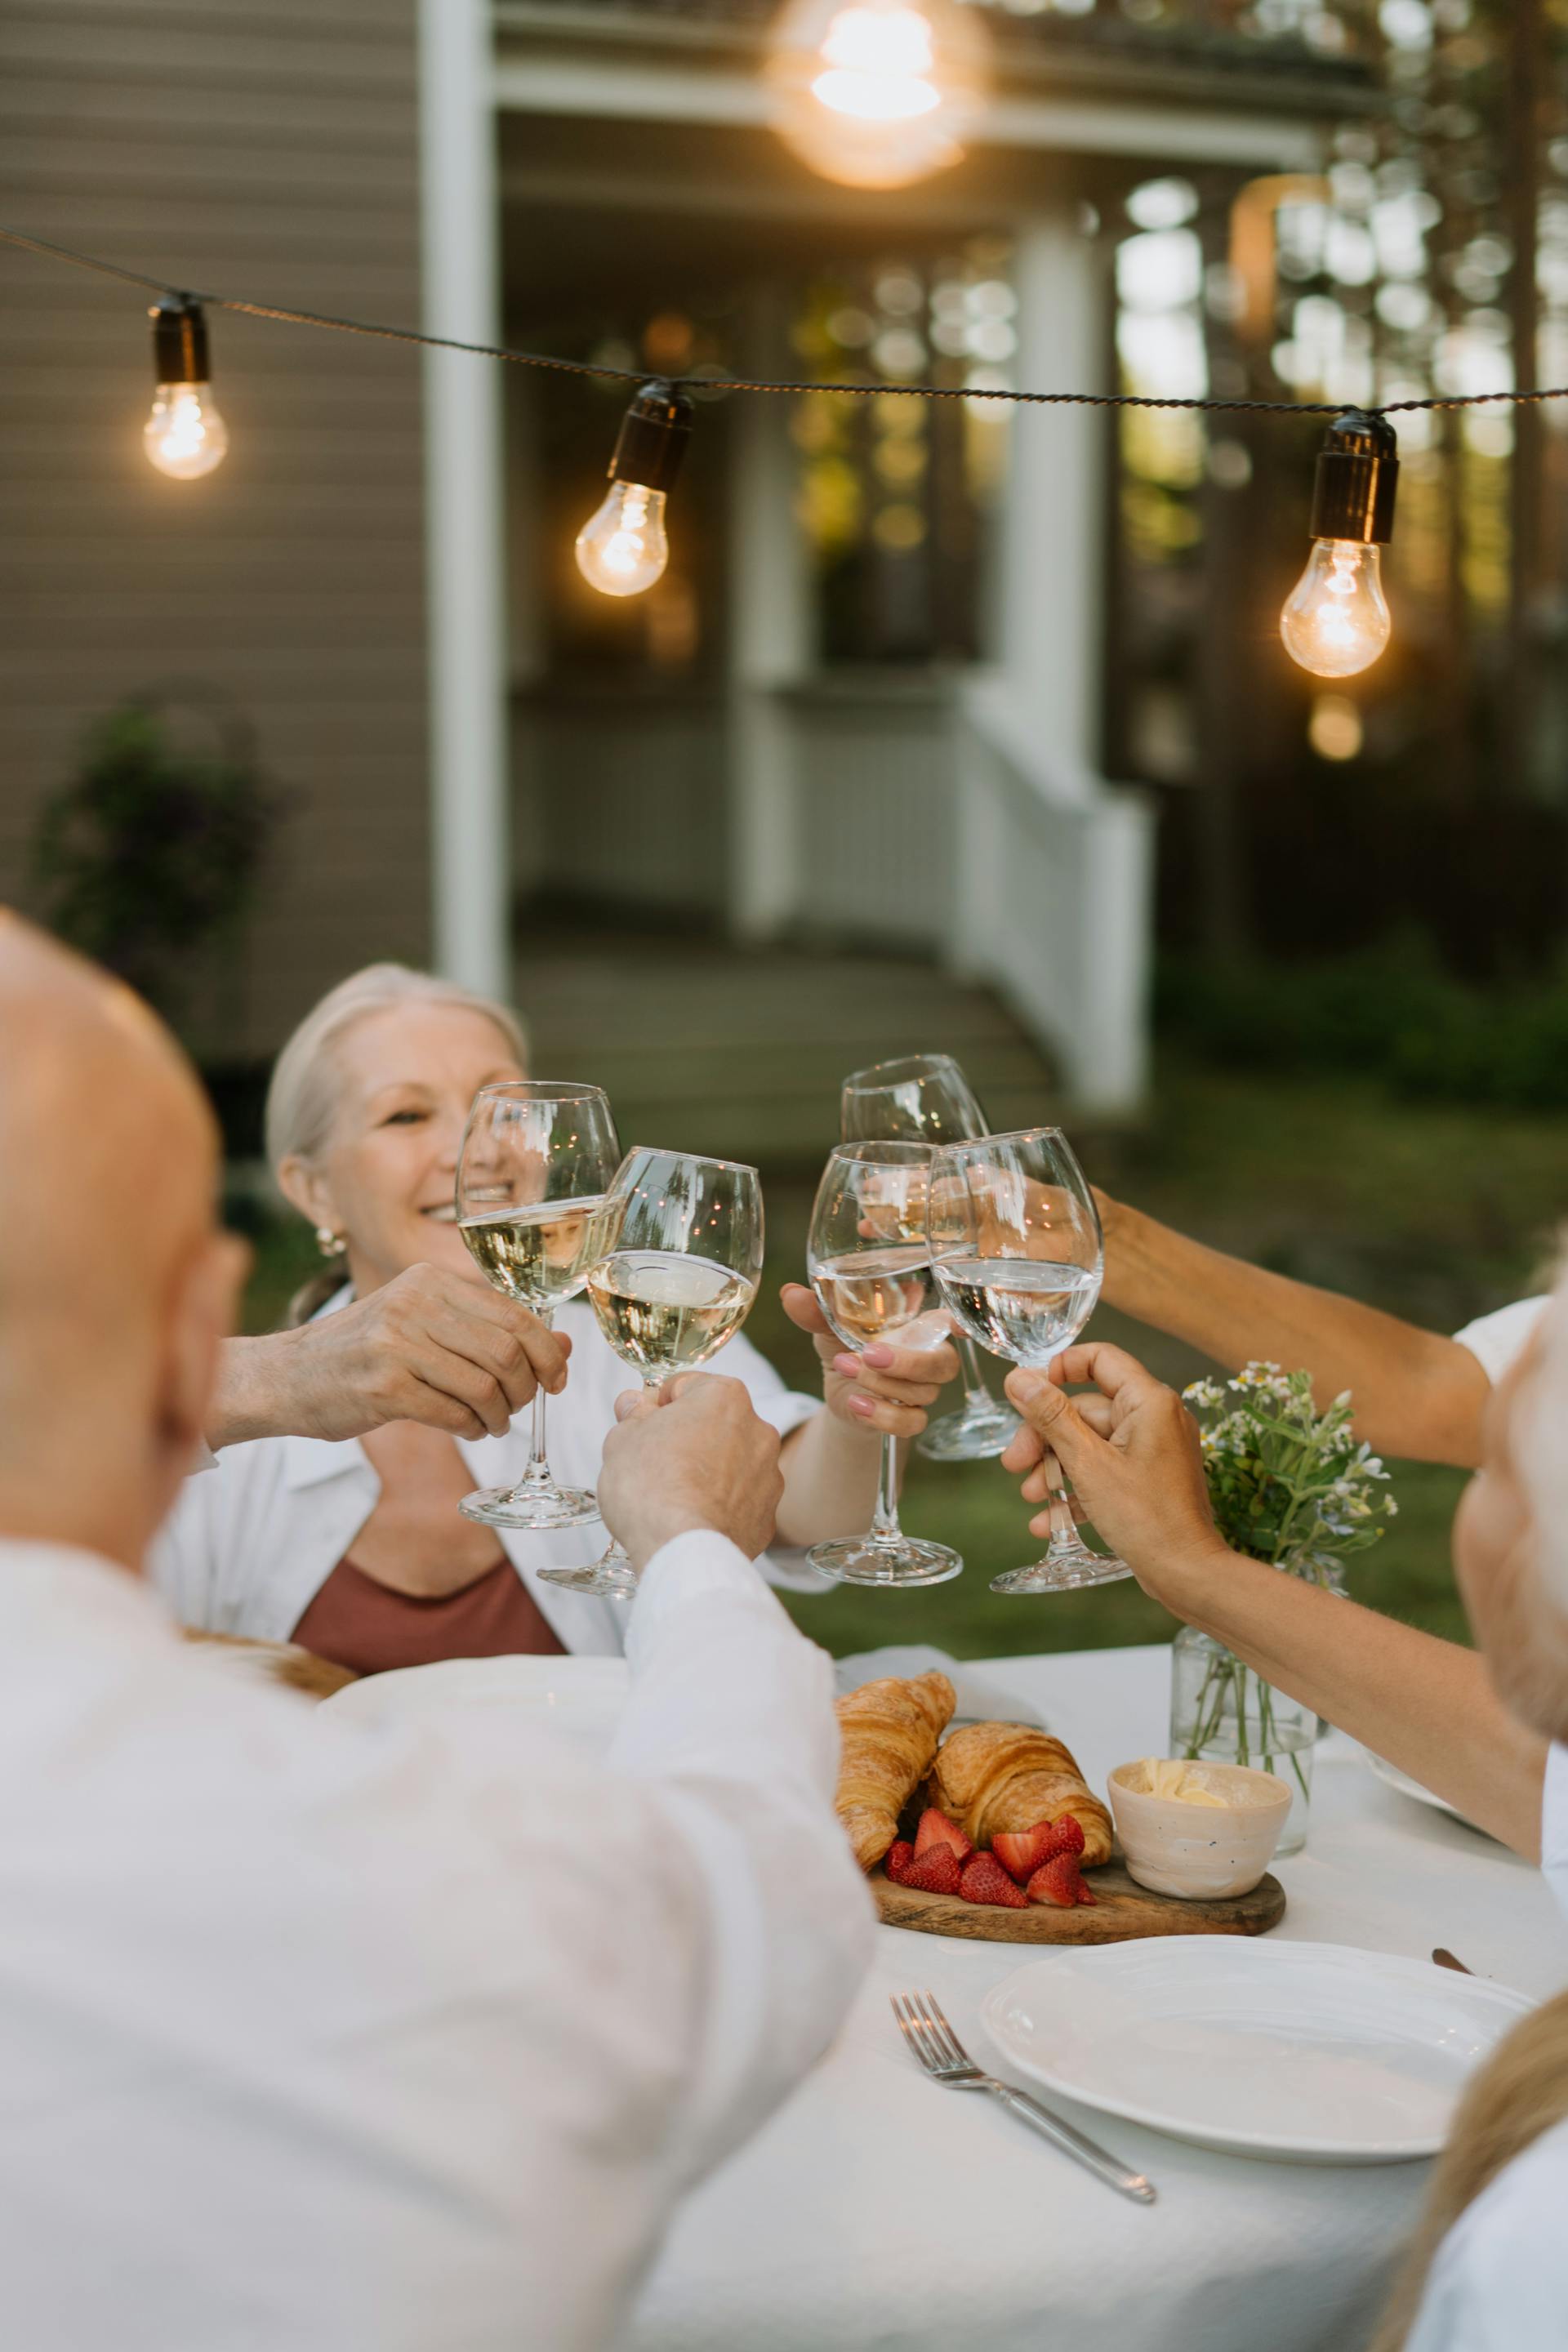 Familienmitglieder erheben ihre Gläser beim Abendessen | Quelle: Pexels